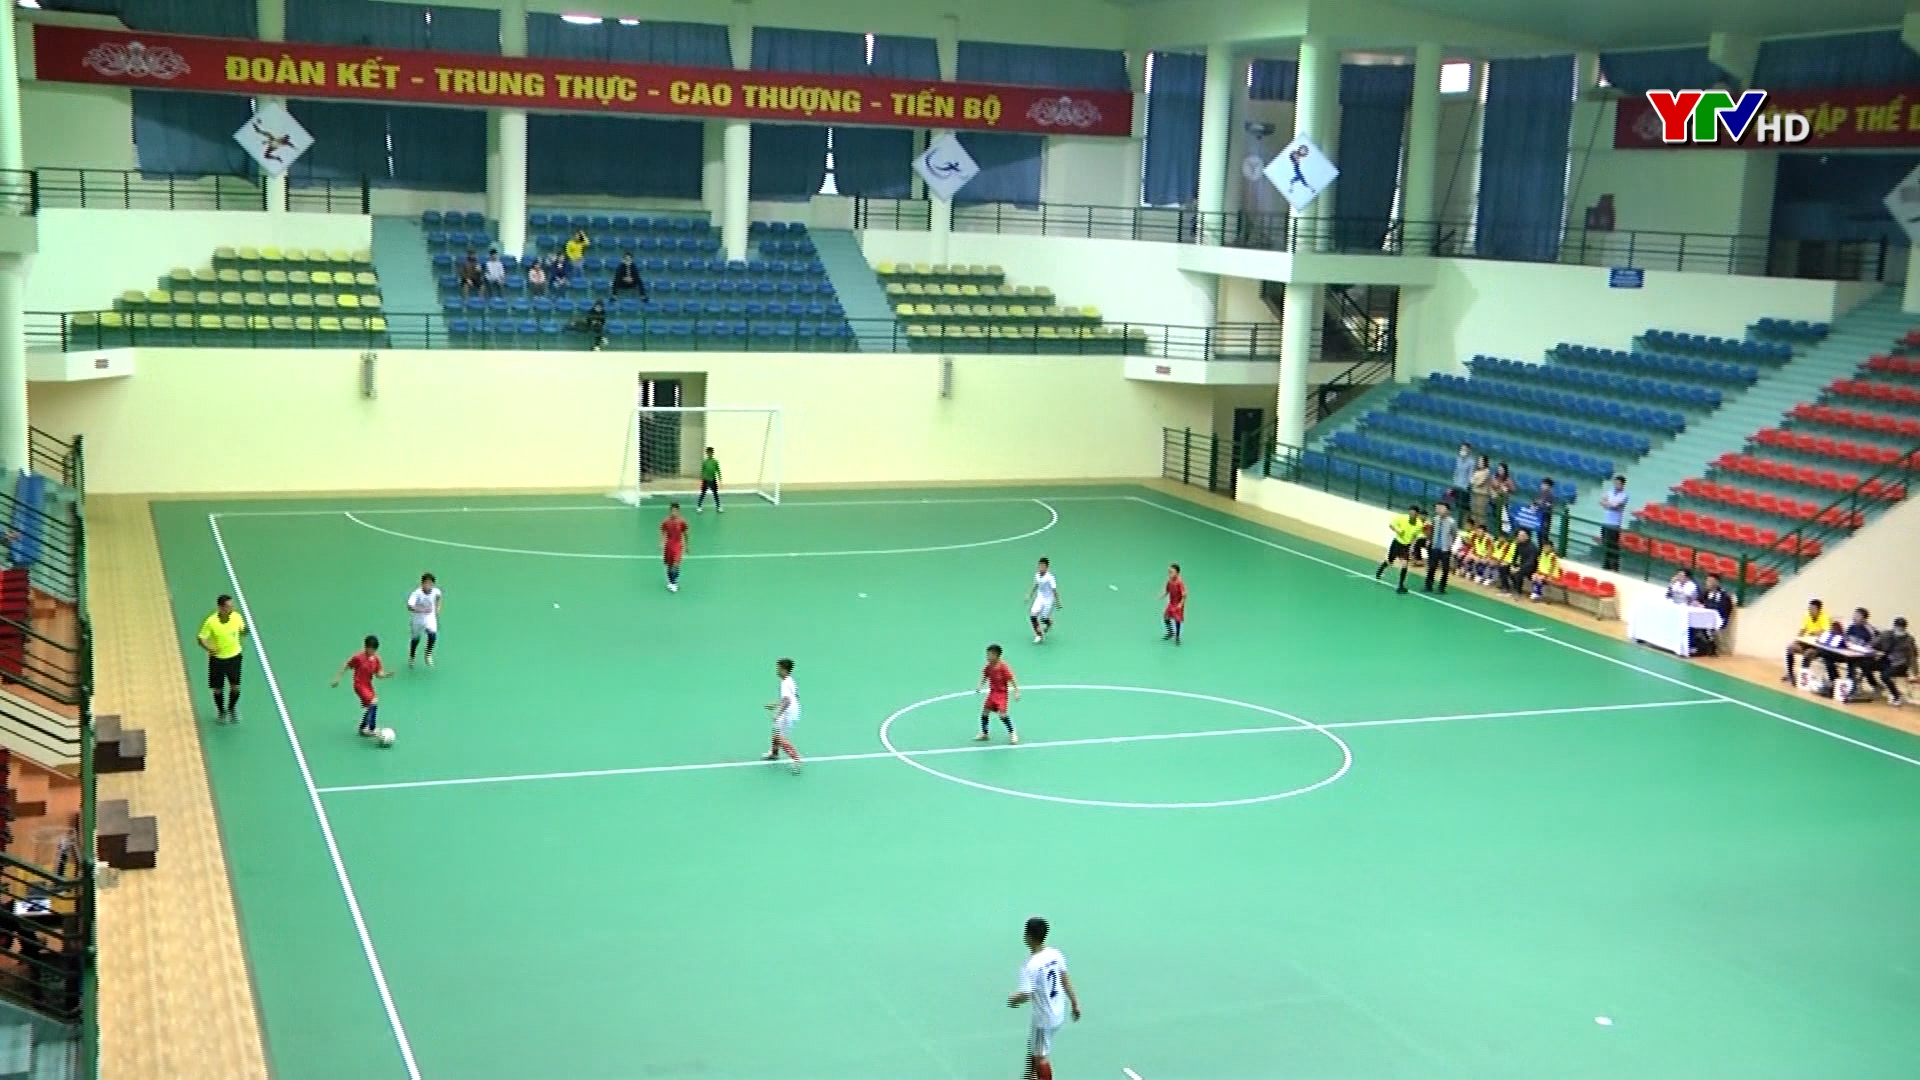 Ngày thi đấu thứ 3 - Giải Bóng đá Nhi đồng cúp Phát thanh - Truyền hình Yên Bái diễn ra 8 trận thi đấu